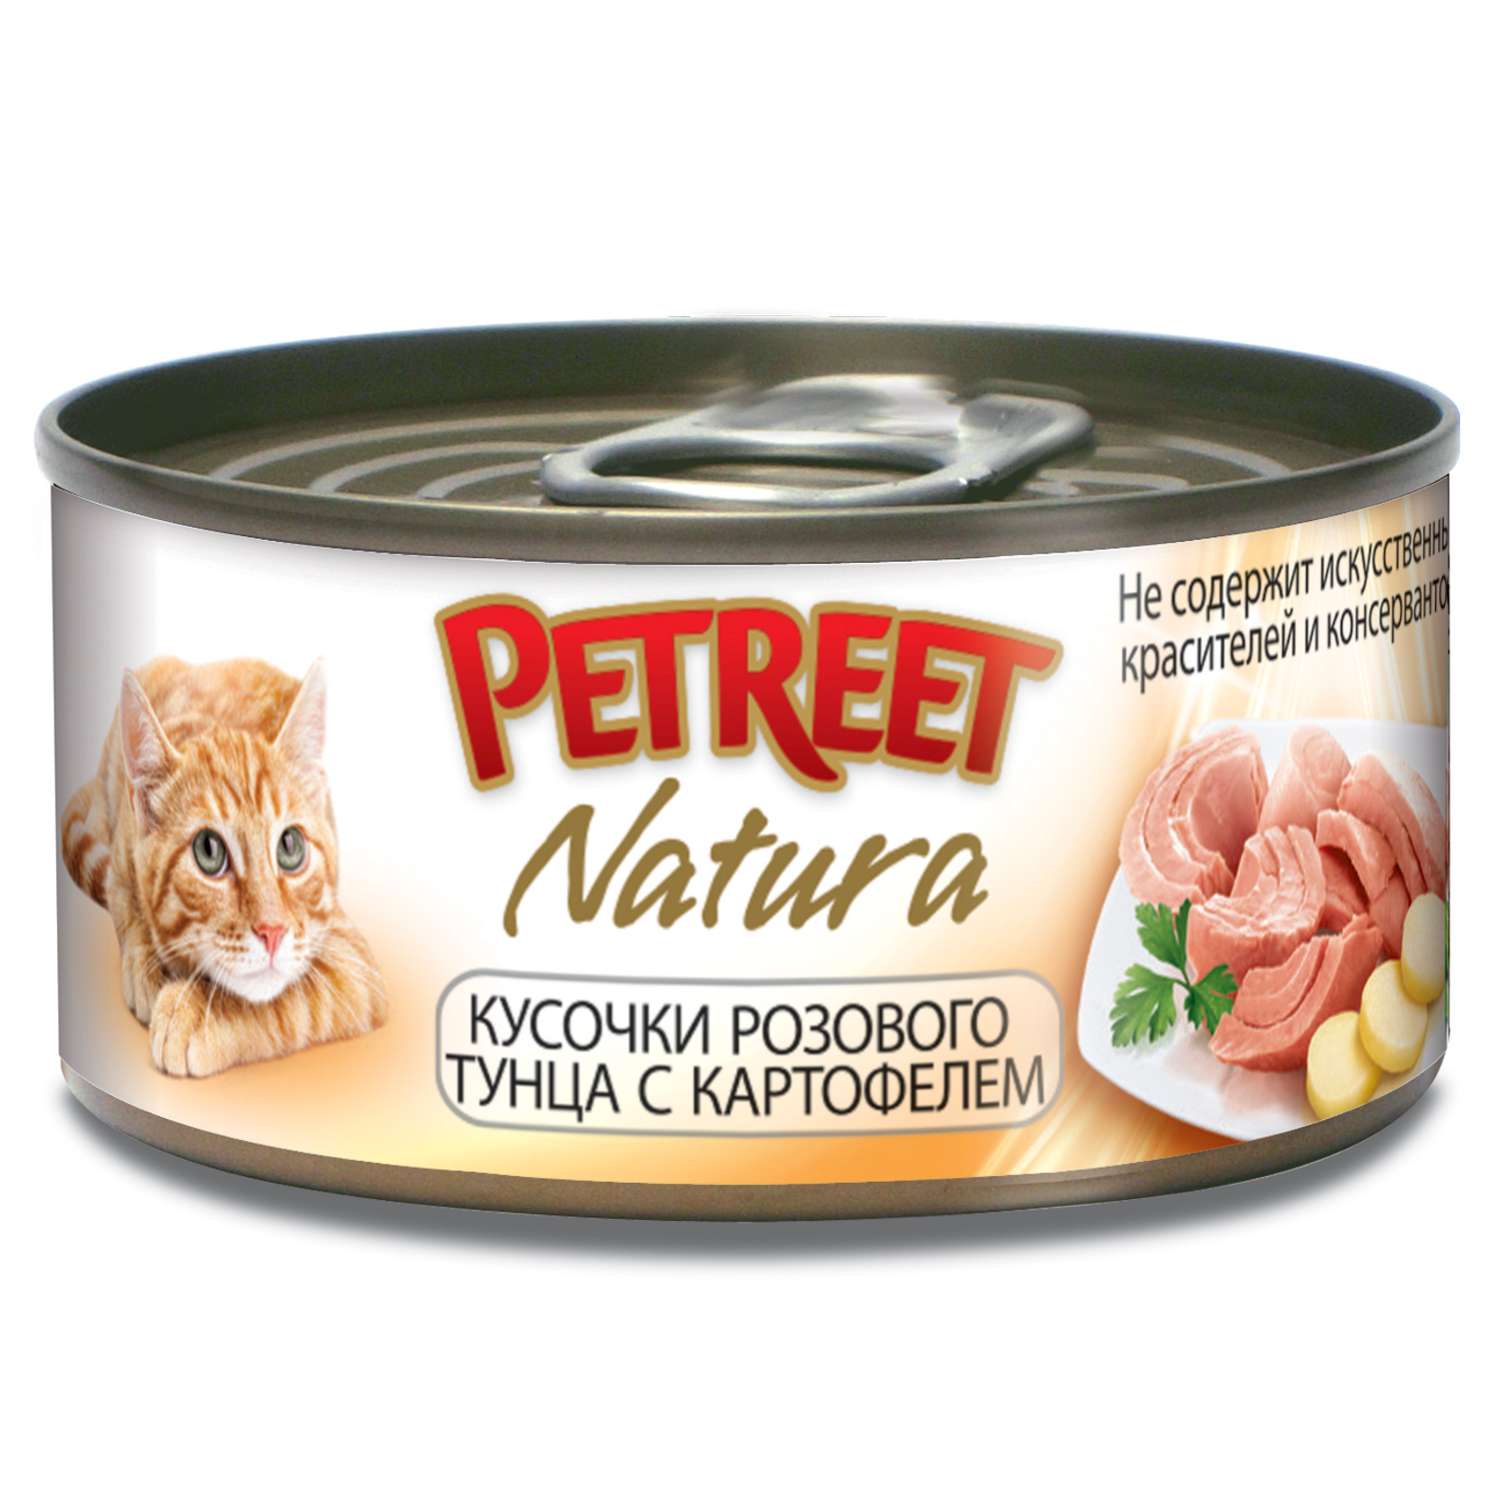 Корм влажный для кошек Petreet 70г кусочки розового тунца с картофелем консервированный - фото 1